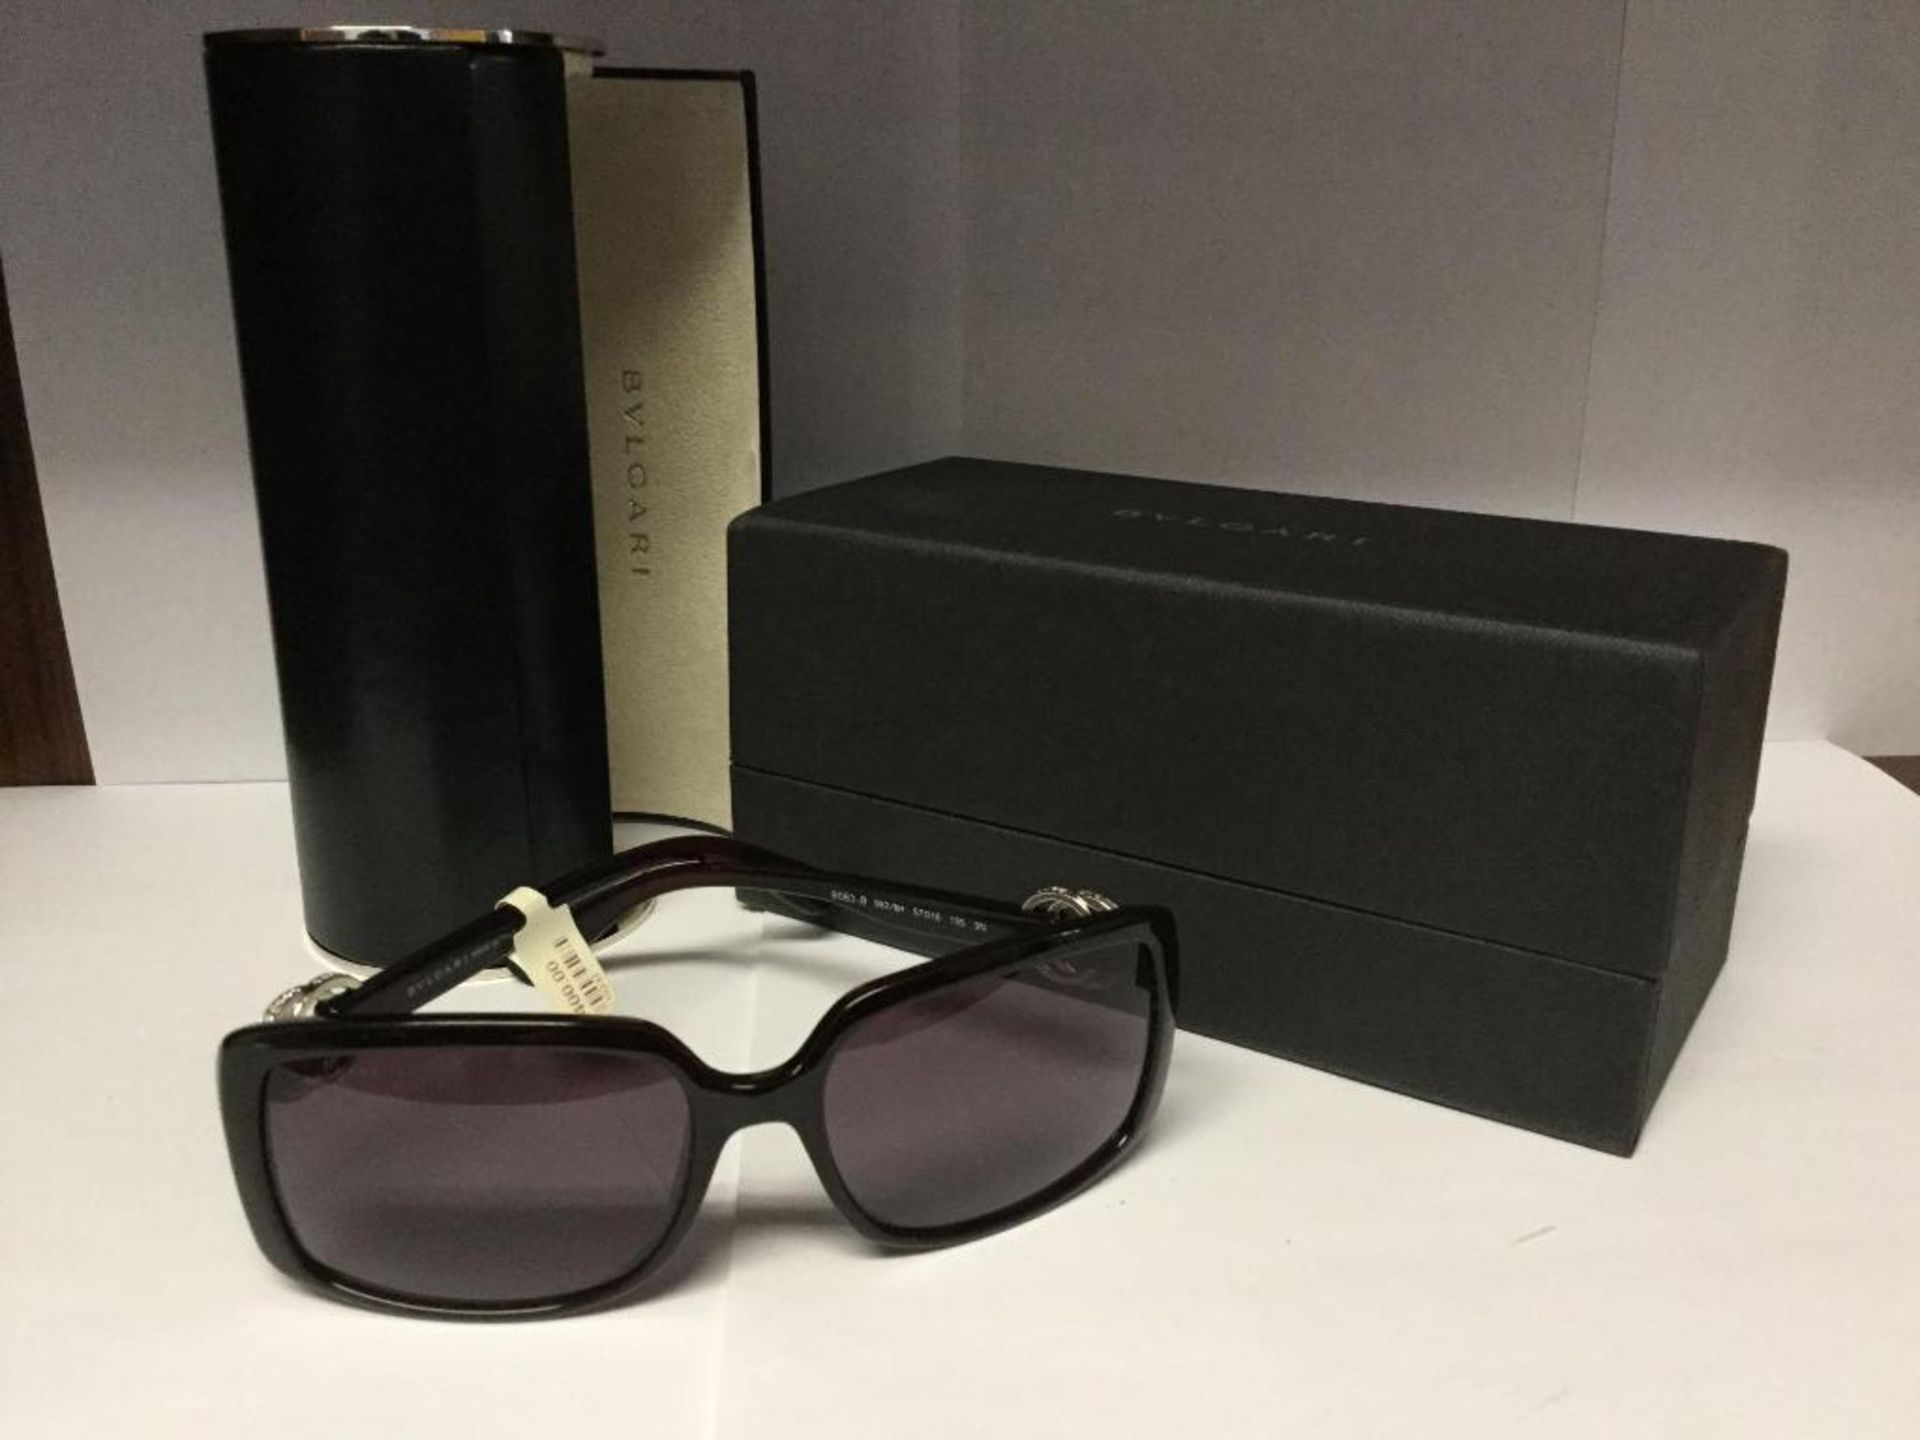 Ladies BVLGARI Sunglasses with case and Box - value $ 400